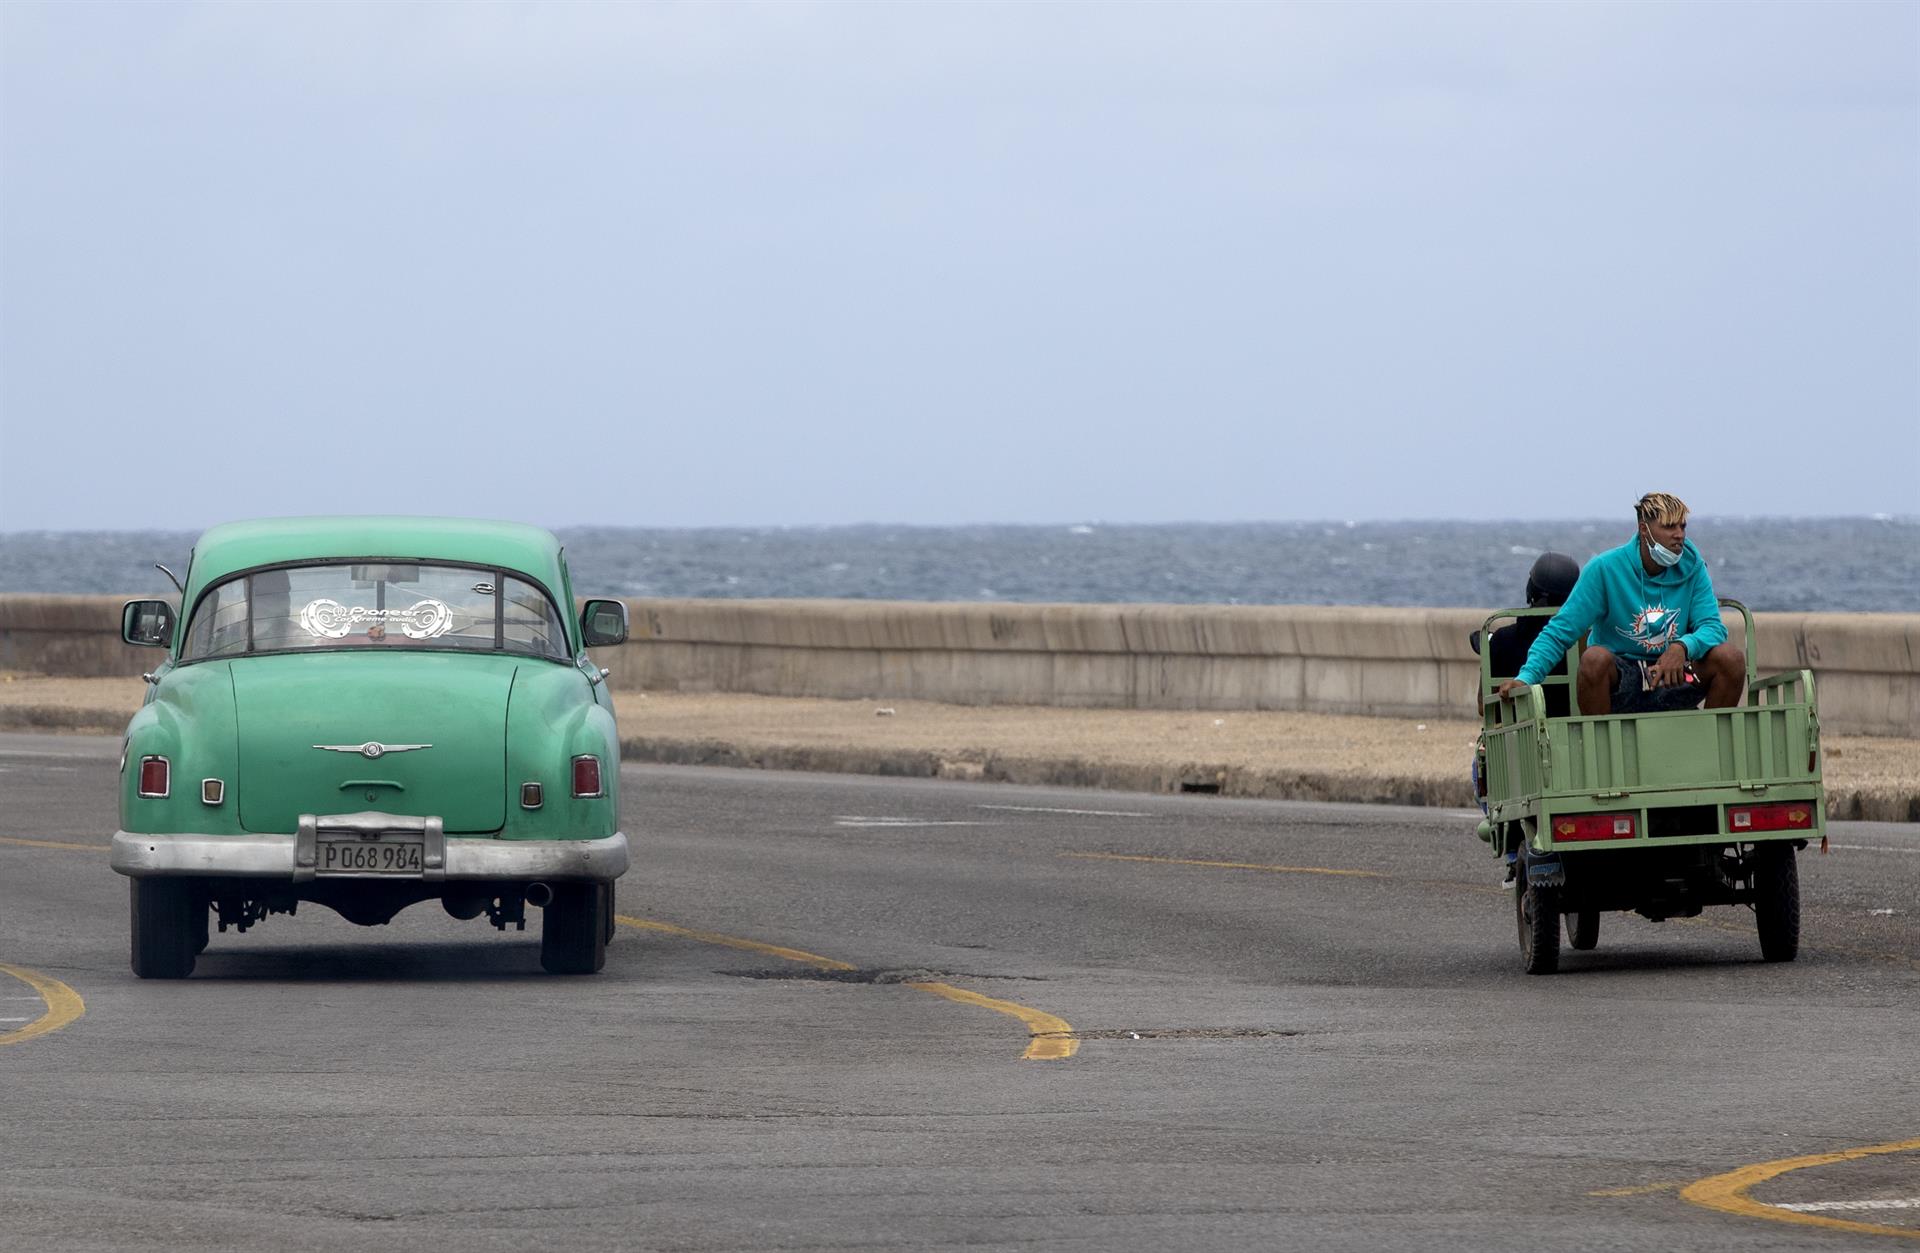 La falta de gasolina en Cuba empeora y las colas son cada vez más grandes